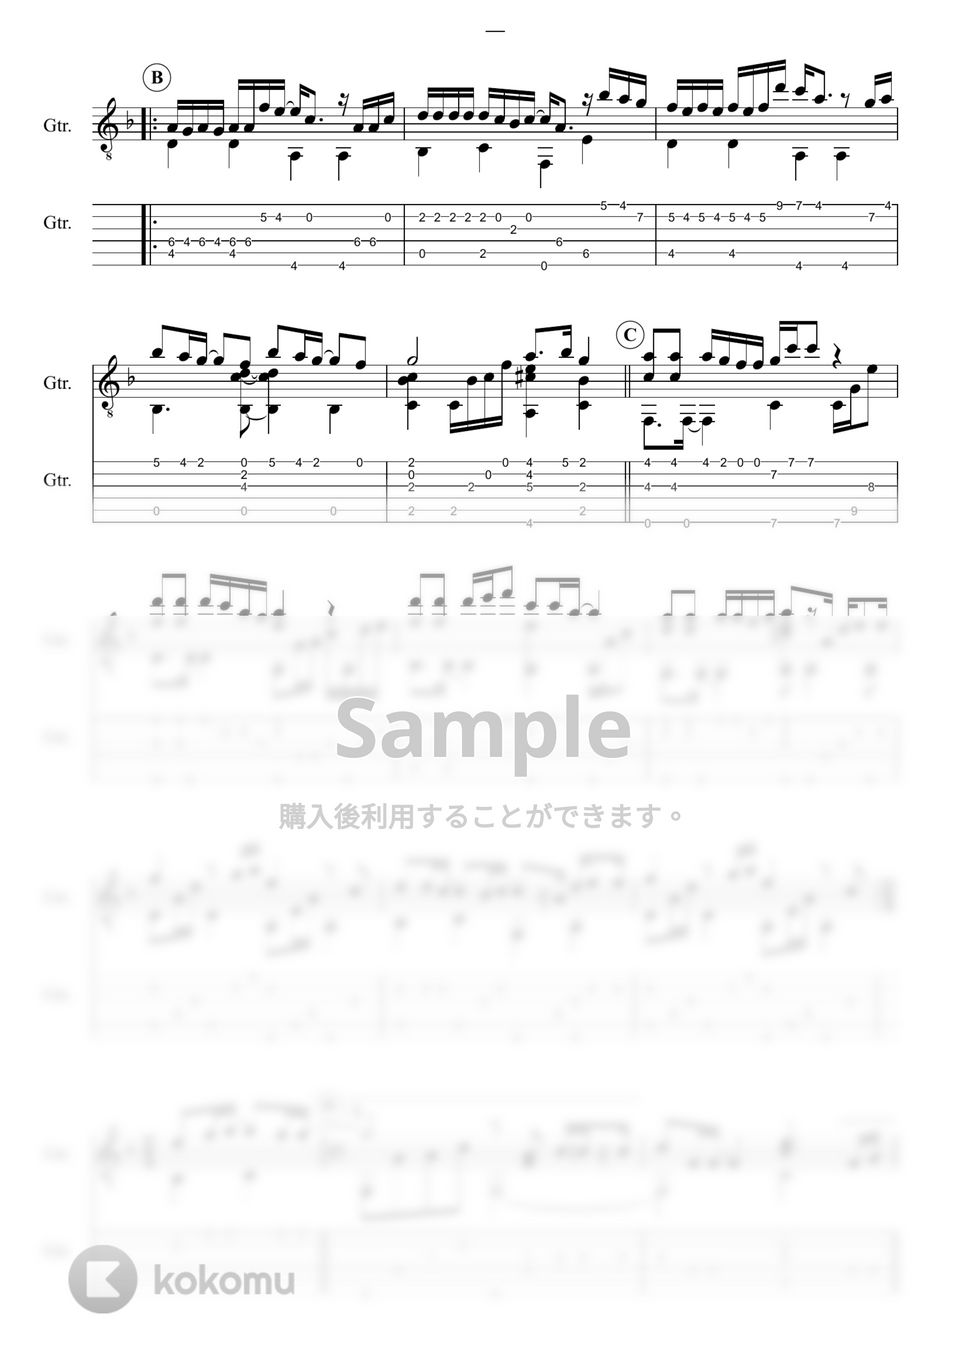 菅田将暉 - 虹 (『STAND BY ME ドラえもん 2』) by 鷹城-Takajoe-